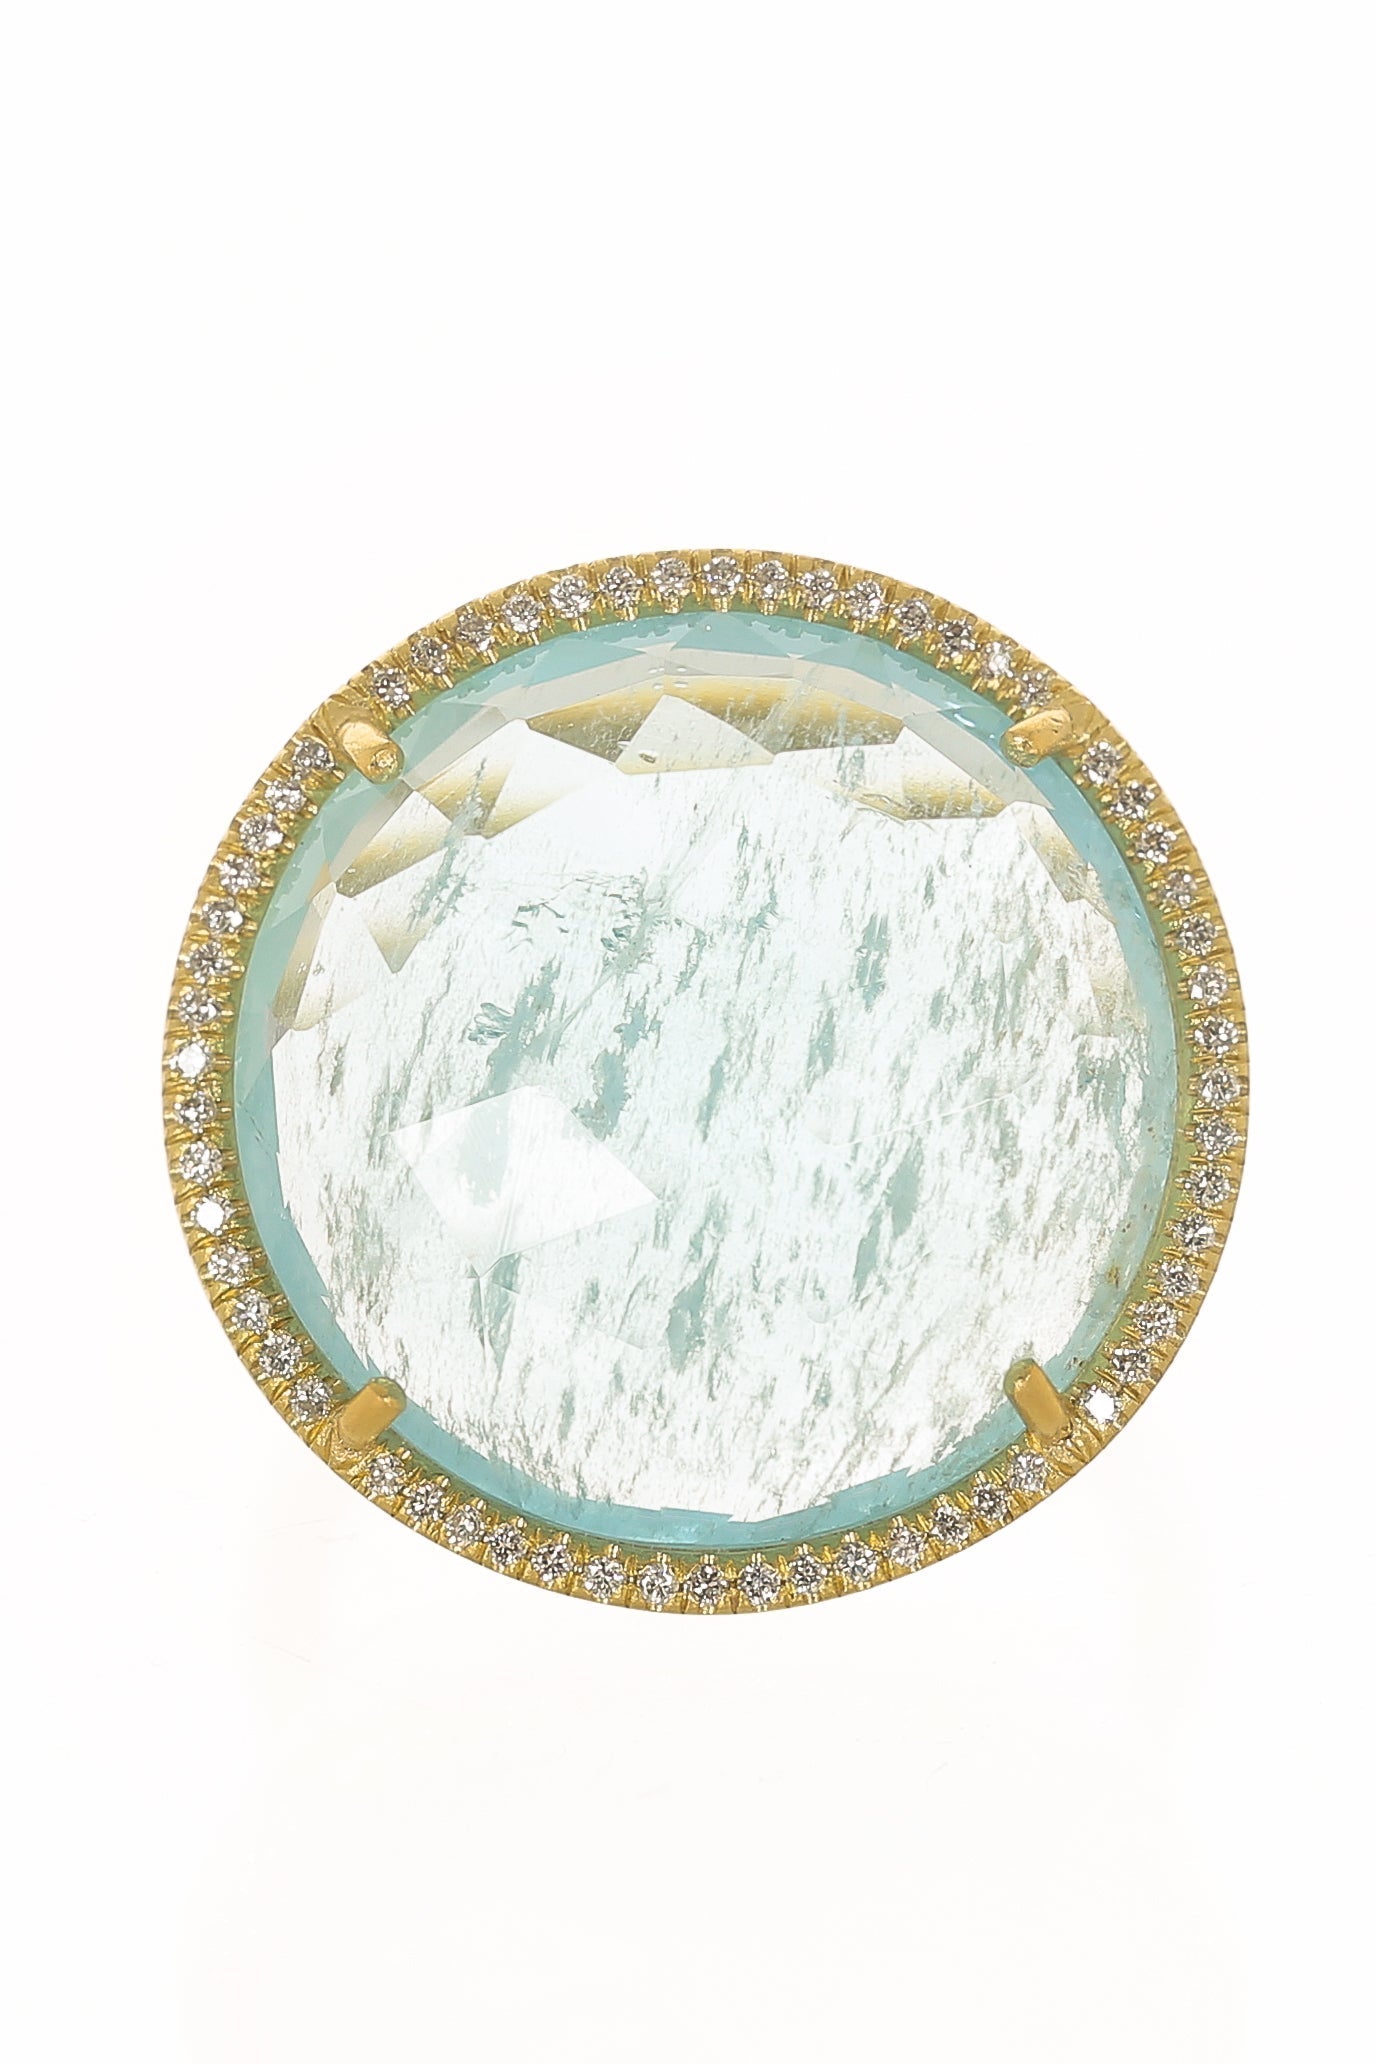 IRENE NEUWIRTH JEWELRY-Rosecut Aquamarine Ring-YELLOW GOLD